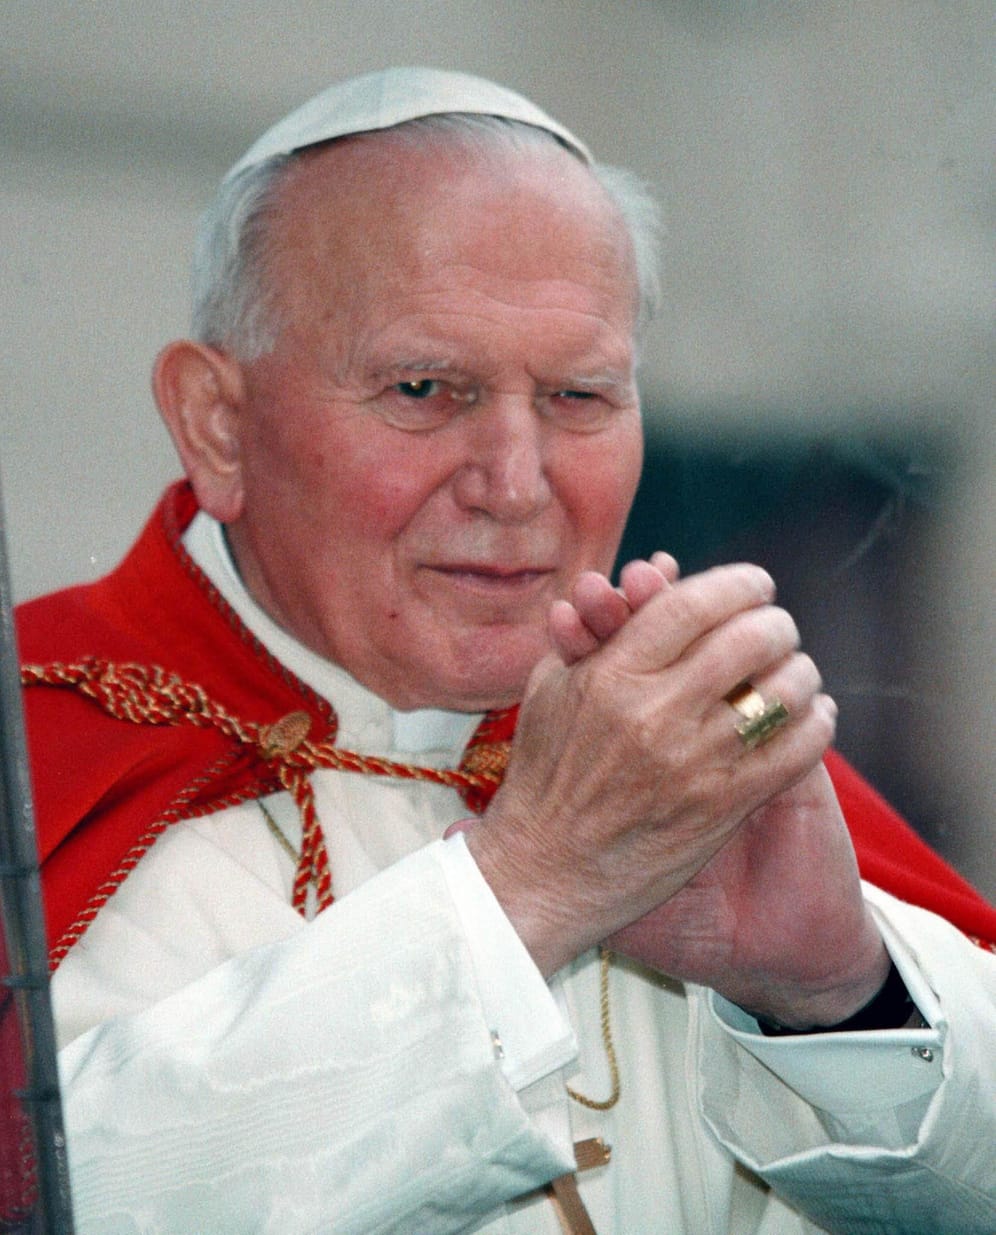 Papst Johannes Paul II.: Bei dem einstigen Oberhaupt der römisch-katholischen Kirche traten erste Symptome einige Jahre vor seinem Tod 2005 auf.